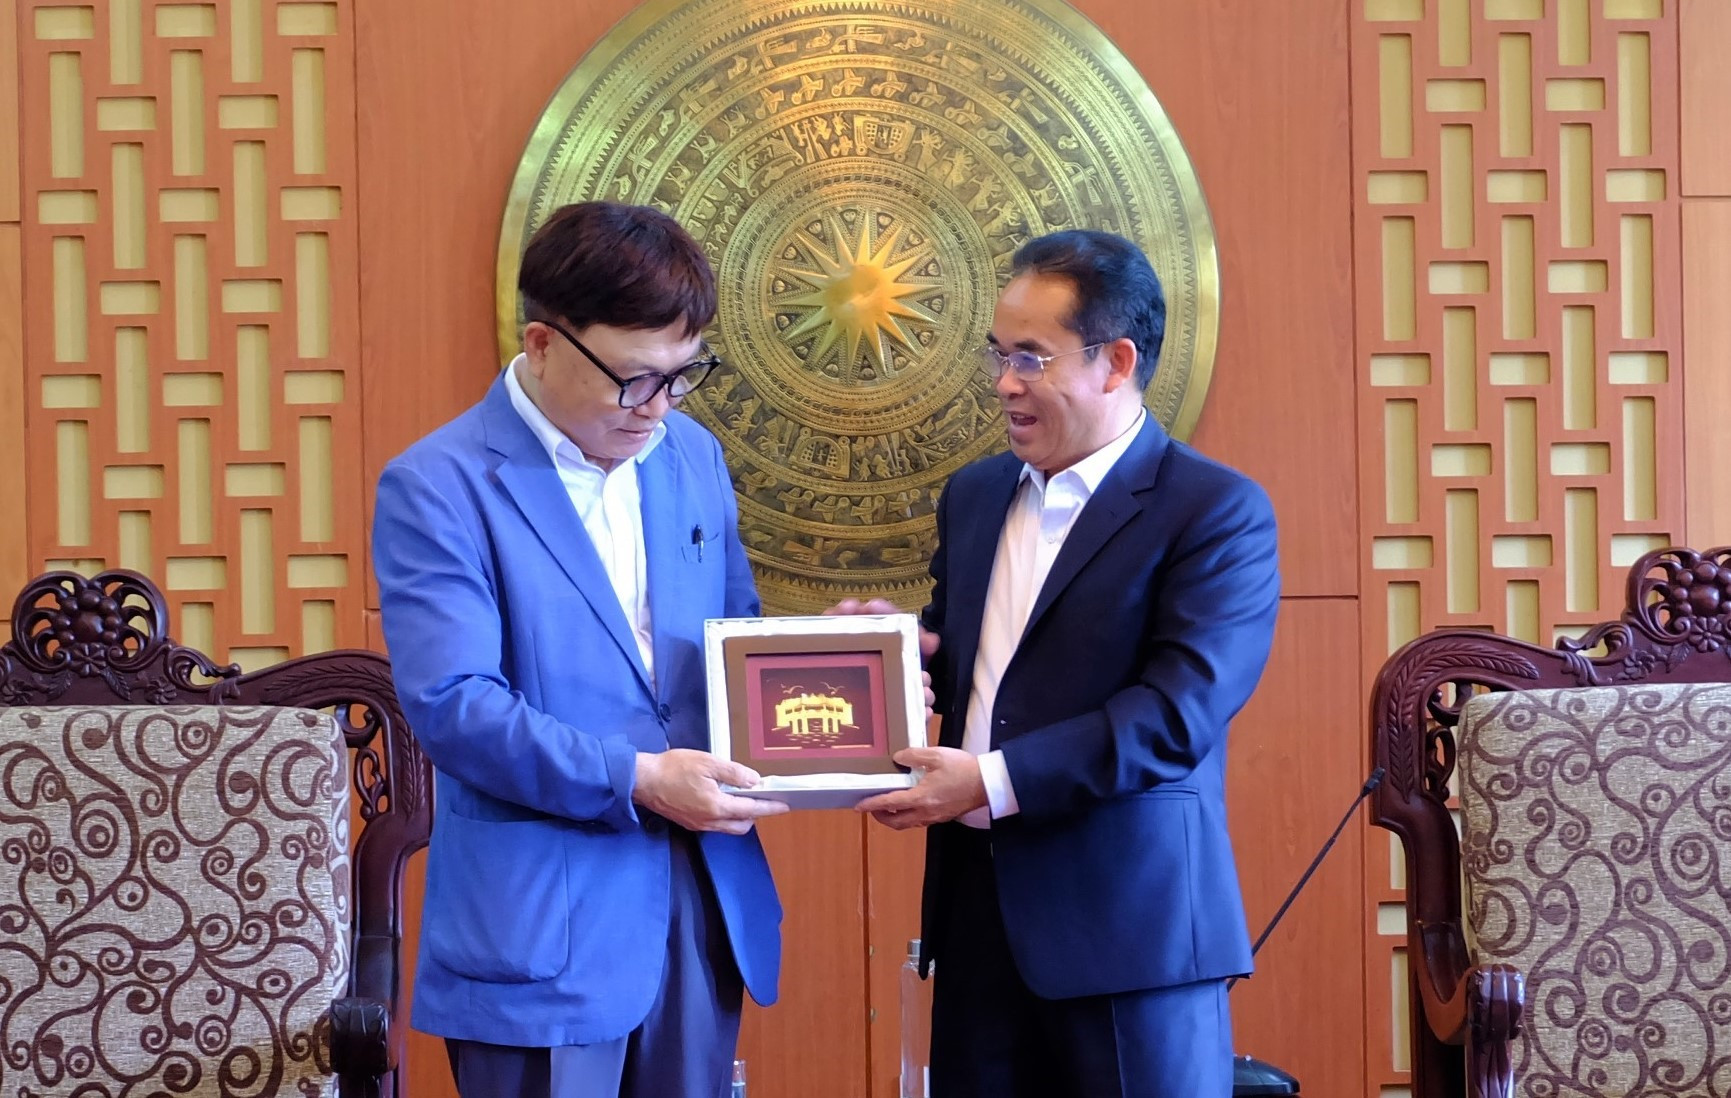 Phó Chủ tịch Trần Anh Tuấn tặng quà kỷ niệm cho ông Cho Dang Ho - Chủ tịch Tổ chức Làng Hoa Sen quốc tế Hàn Quốc. Ảnh: M.L